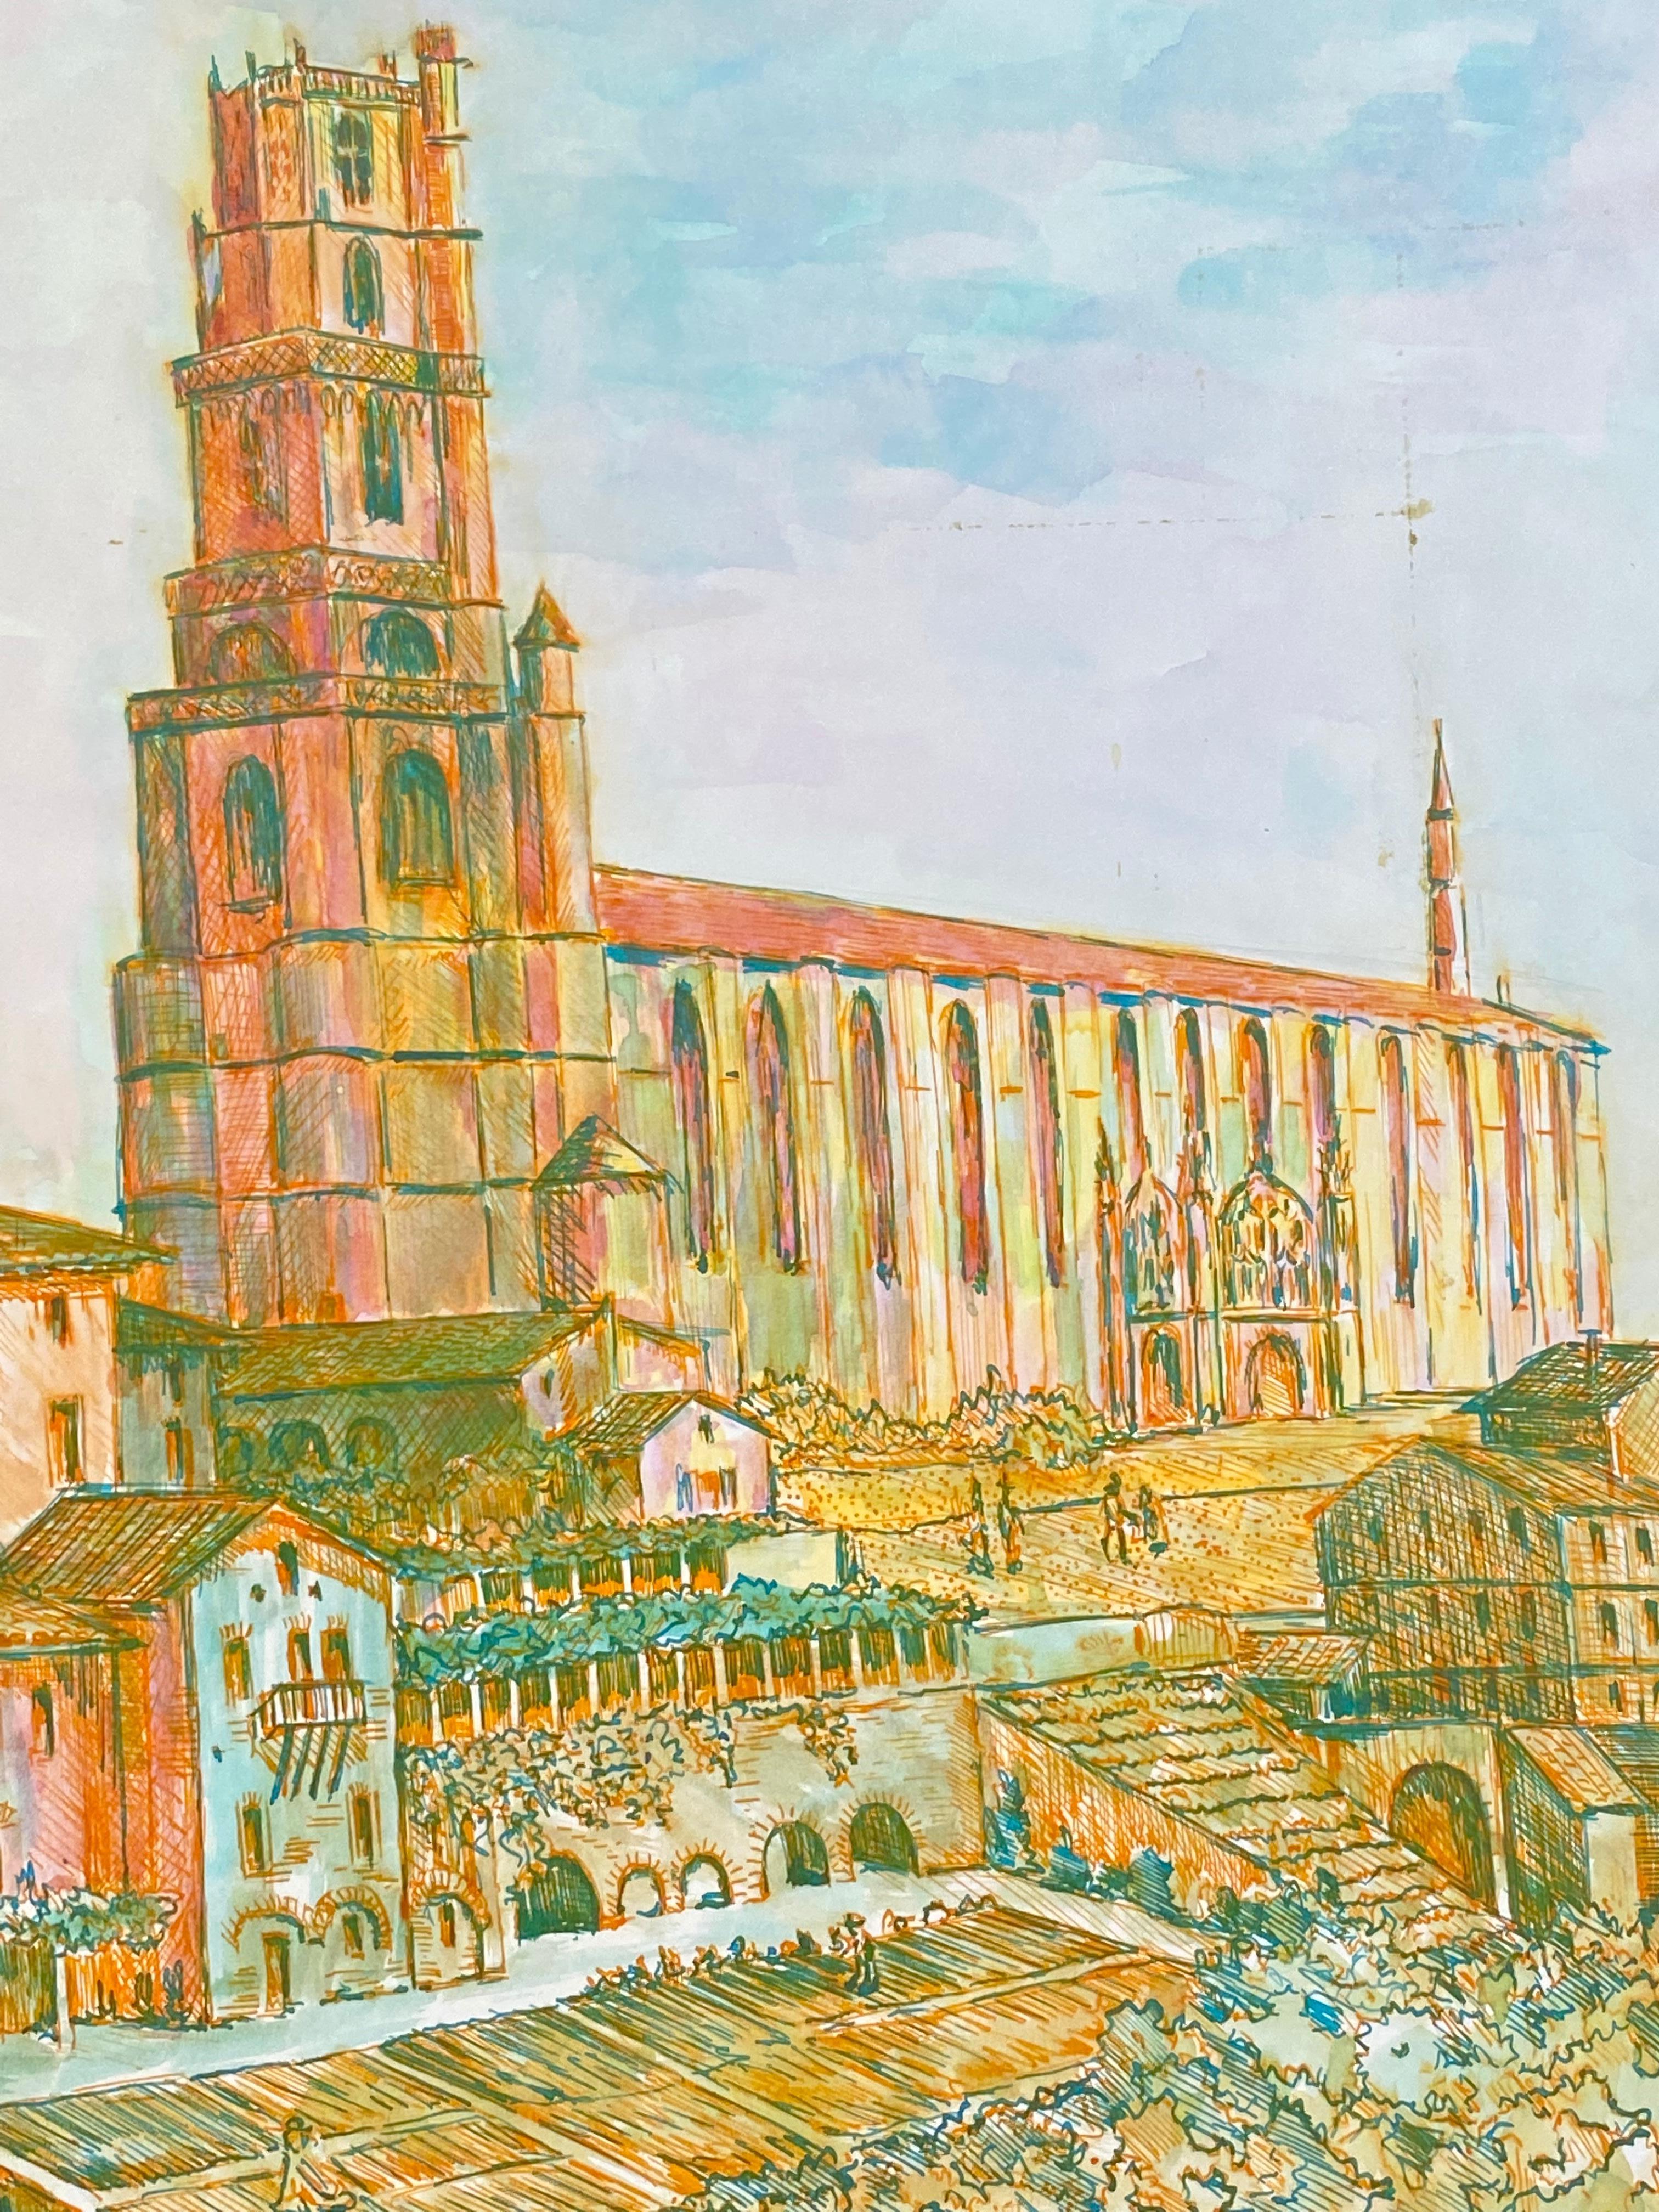 Modernistische/ kubistische Malerei der 1950er Jahre – französische Kathedralenlandschaft in Orange und Rosa, 1950er Jahre – Art von Bernard Labbe